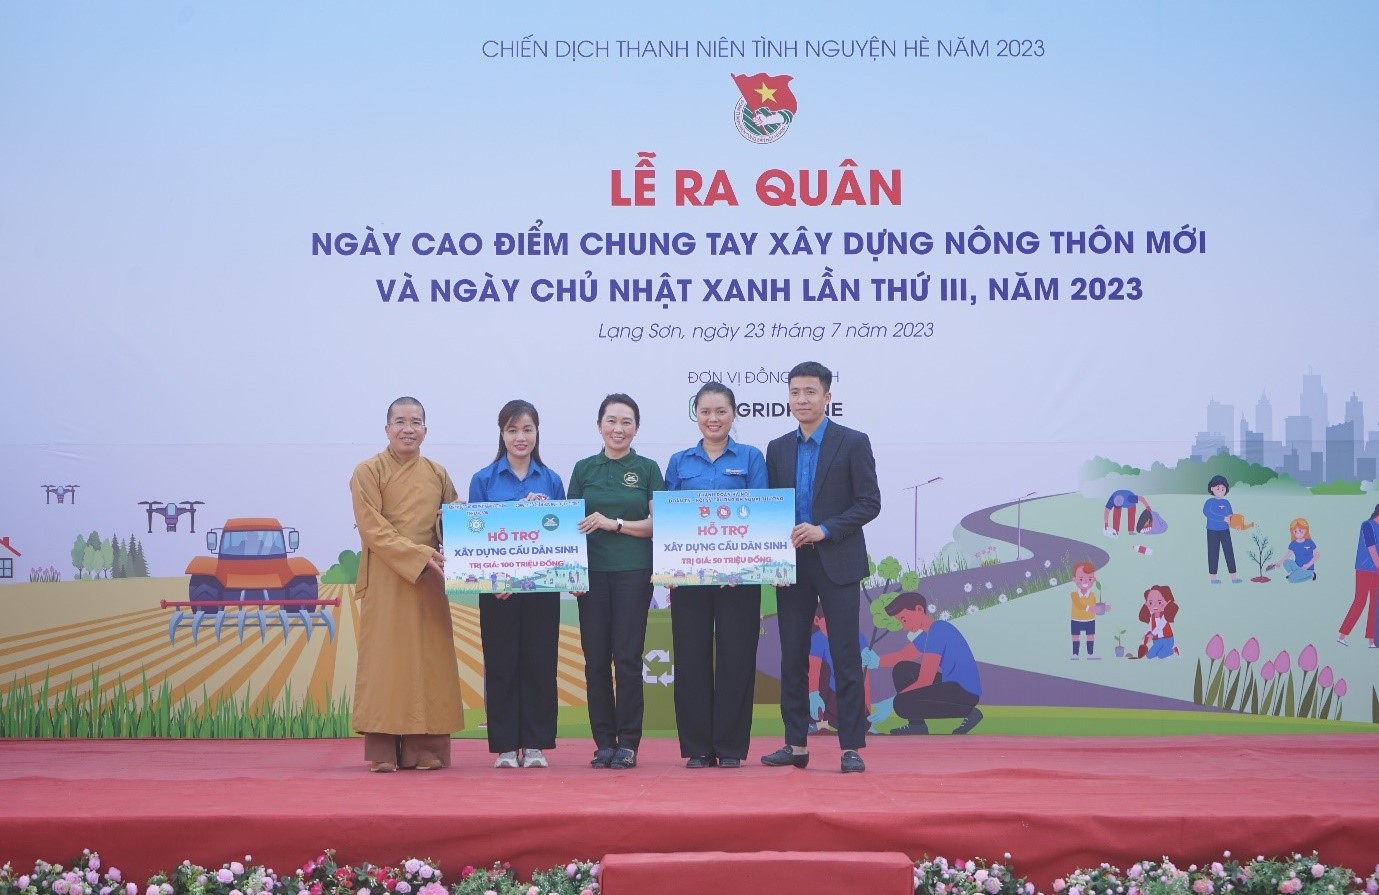 2/ Đại diện Công ty CP hữu nghị Xuân Cương trao ủng hộ xây dựng cầu dân sinh tại huyện Chi Lăng (Lạng Sơn)